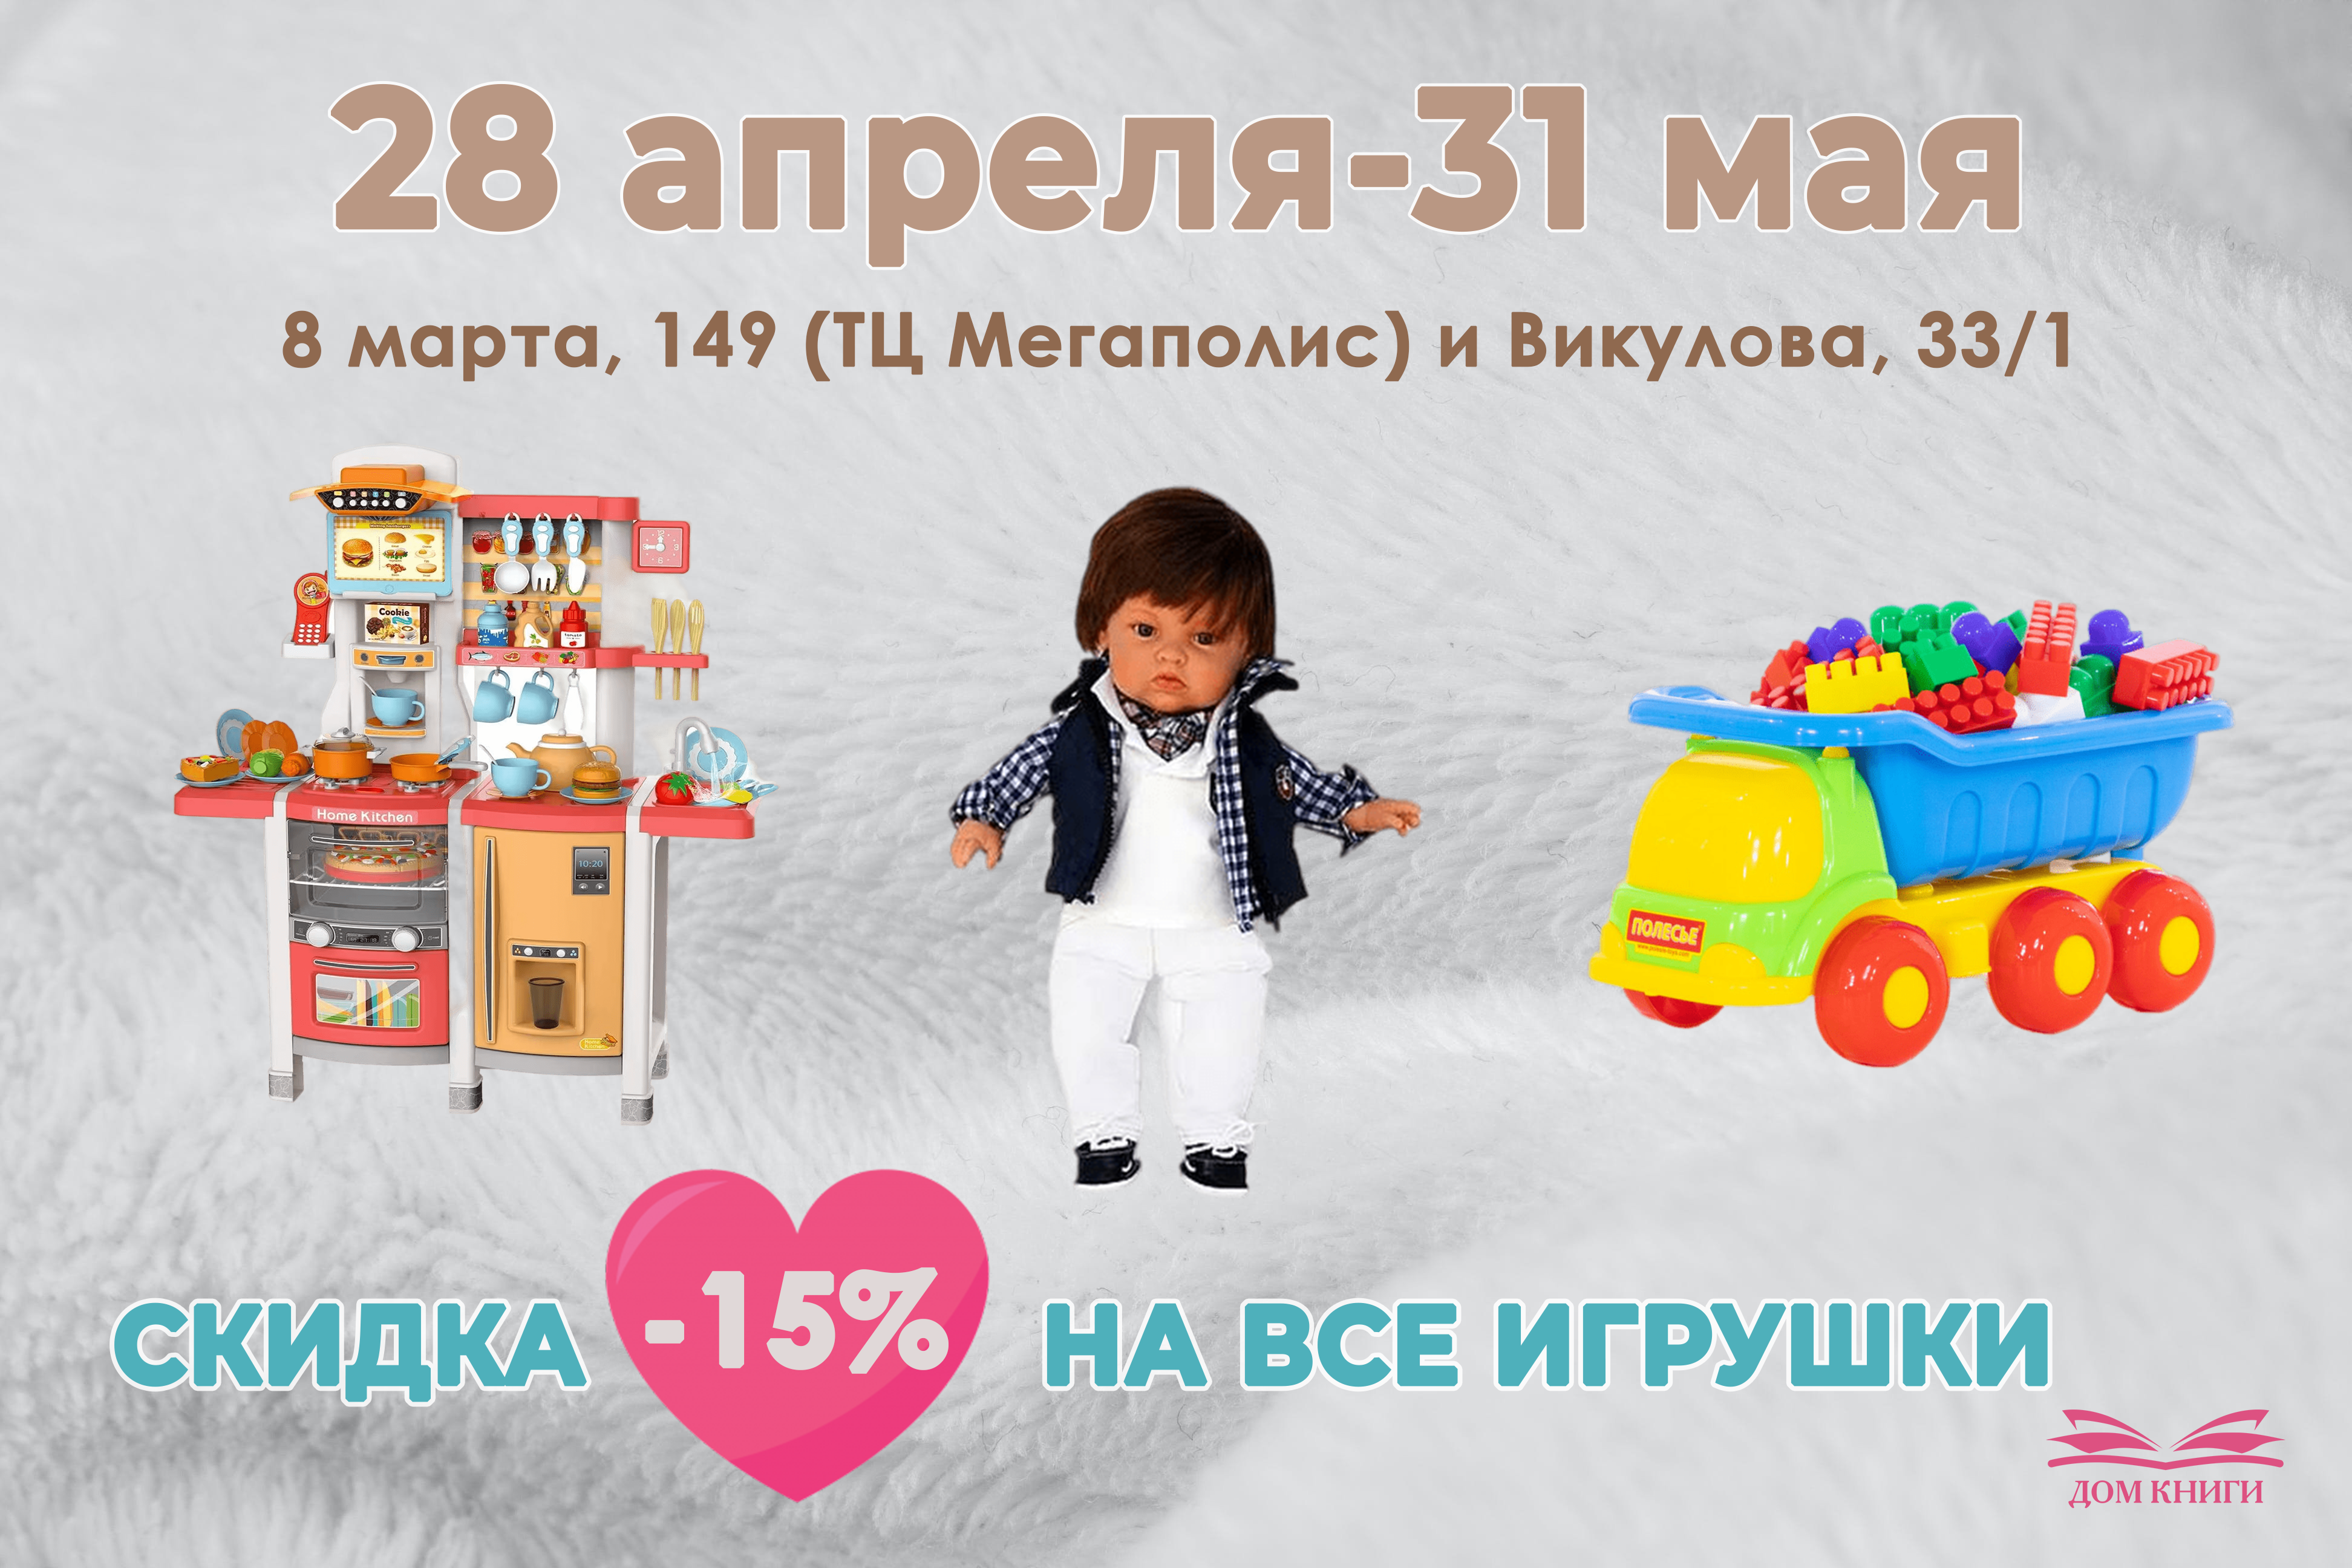 Скидка 15% на игрушки в ТЦ "Мегаполис" и на Викулова 33/1 